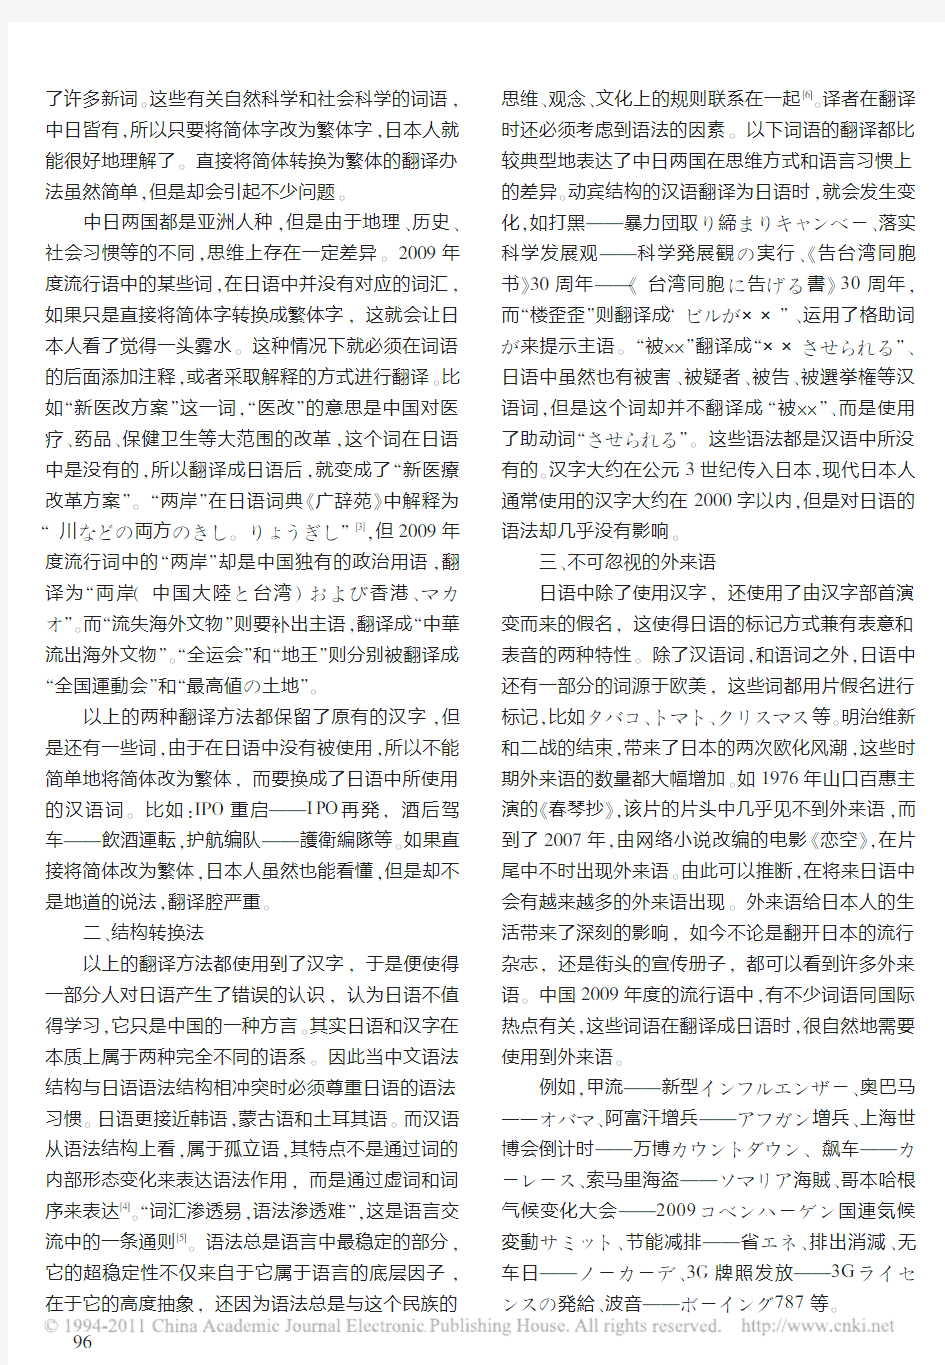 刍议2009年汉语流行语日译法